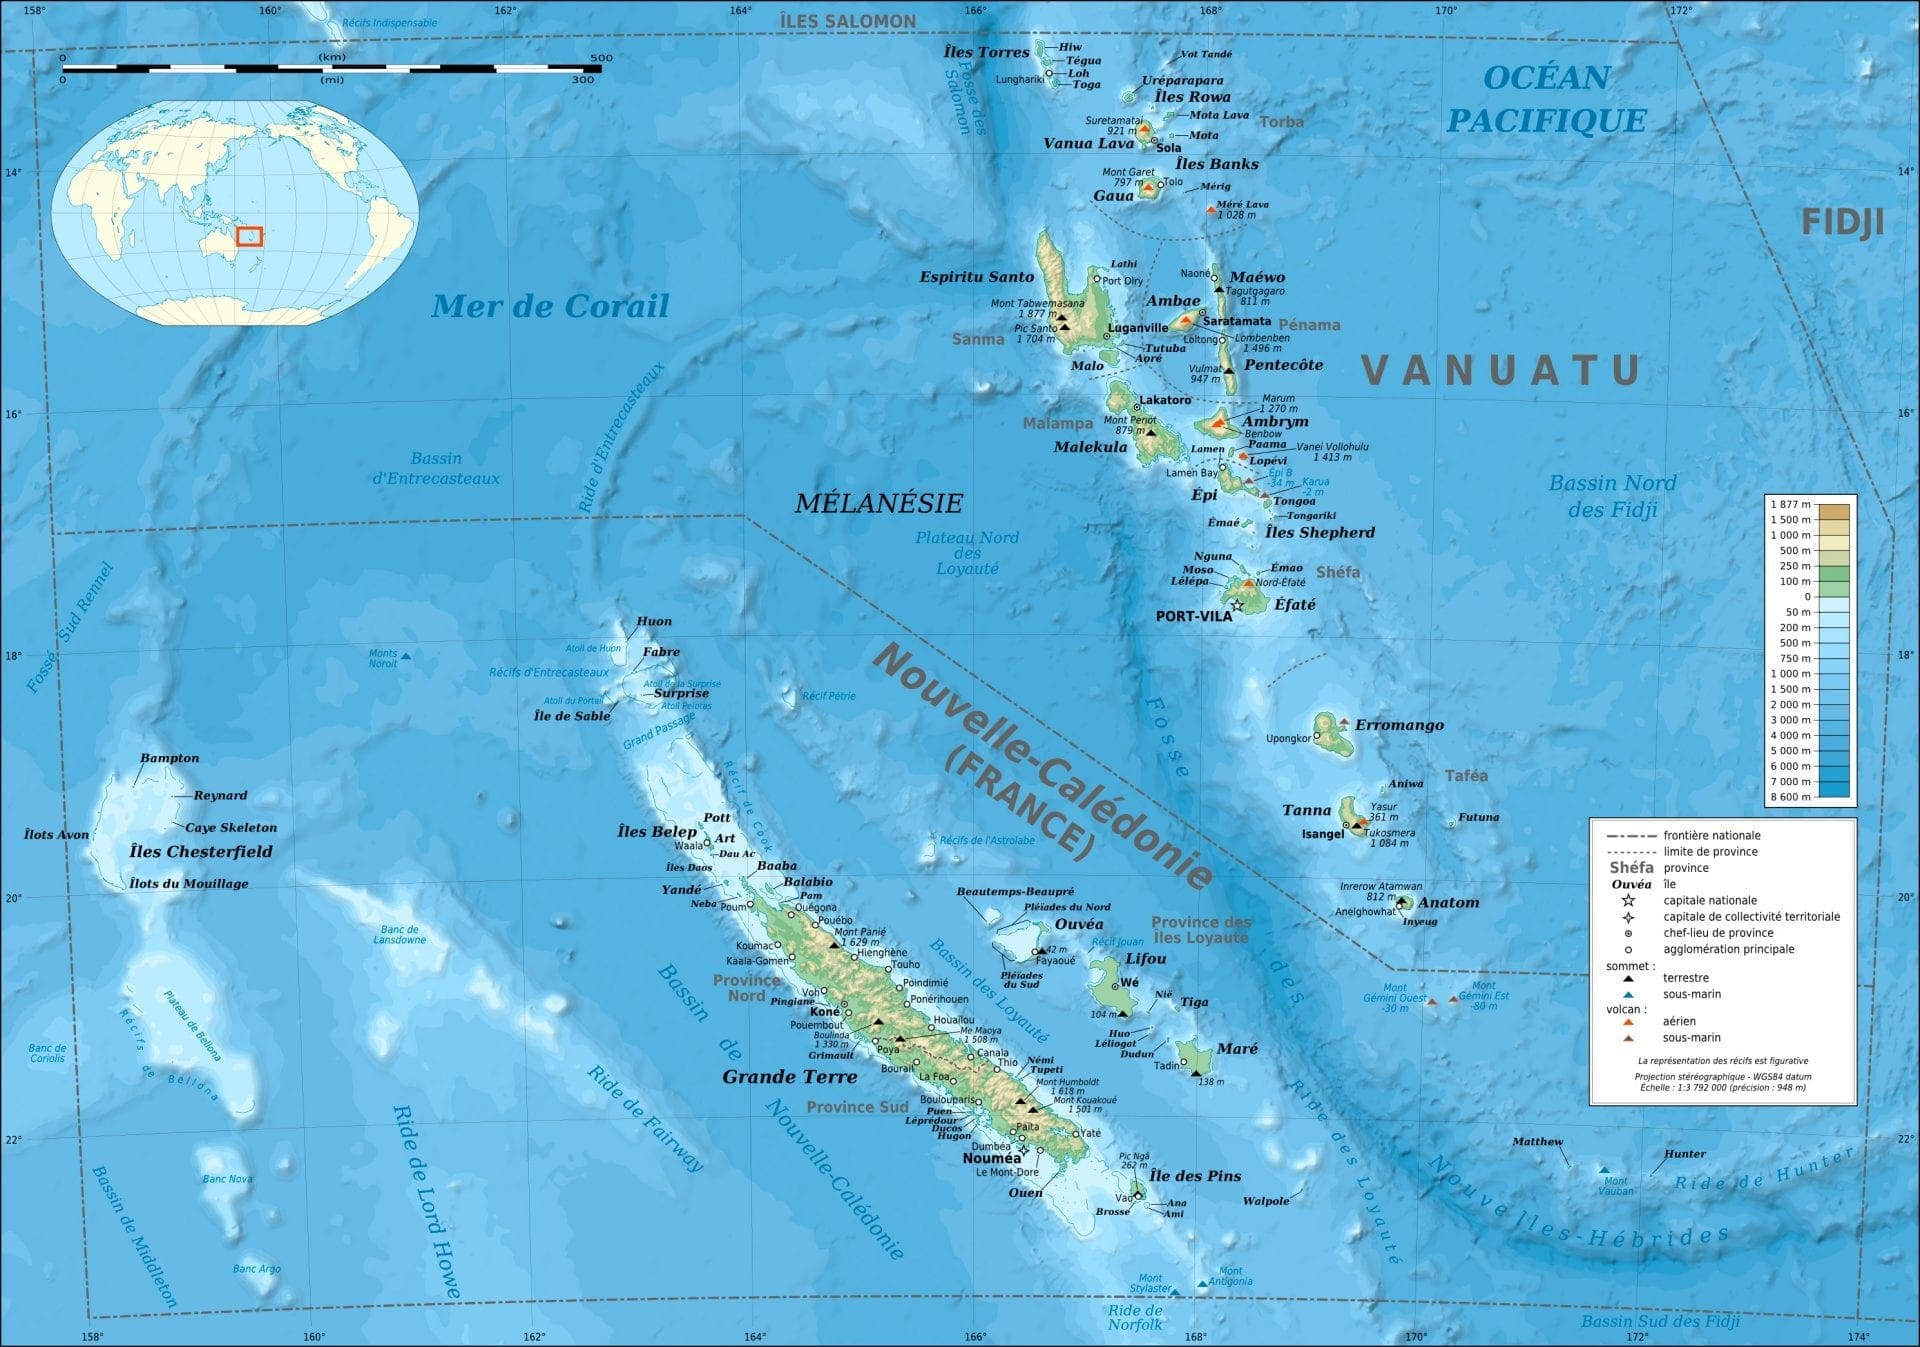 3. Vanuatu & Nouvelle Calédonie